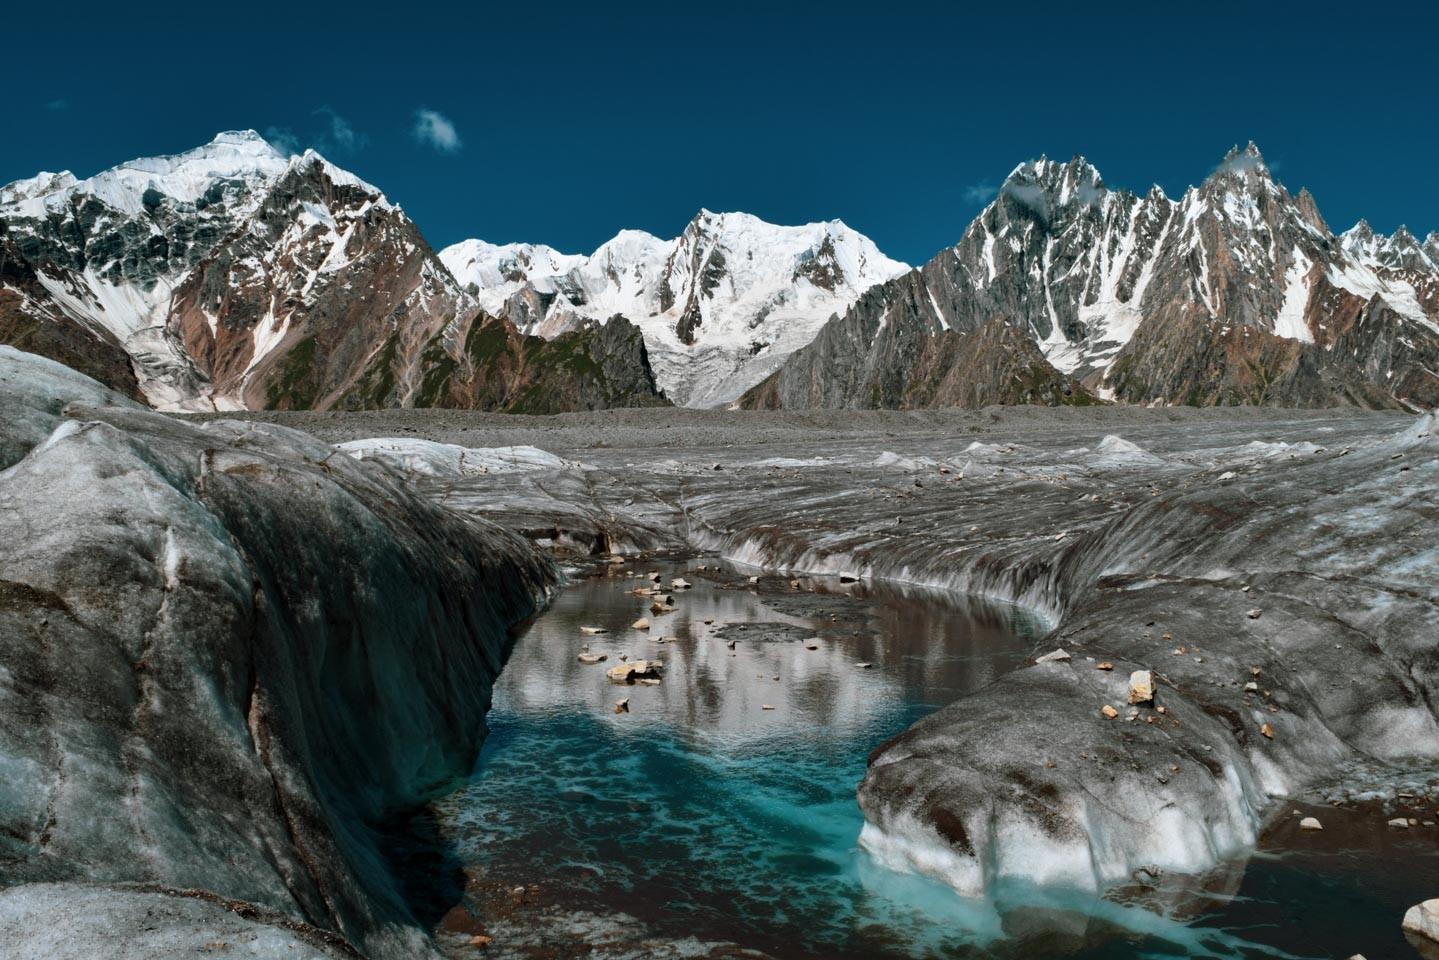 The strenuous trek route to Biafo Glacier, Gilgit Baltistan